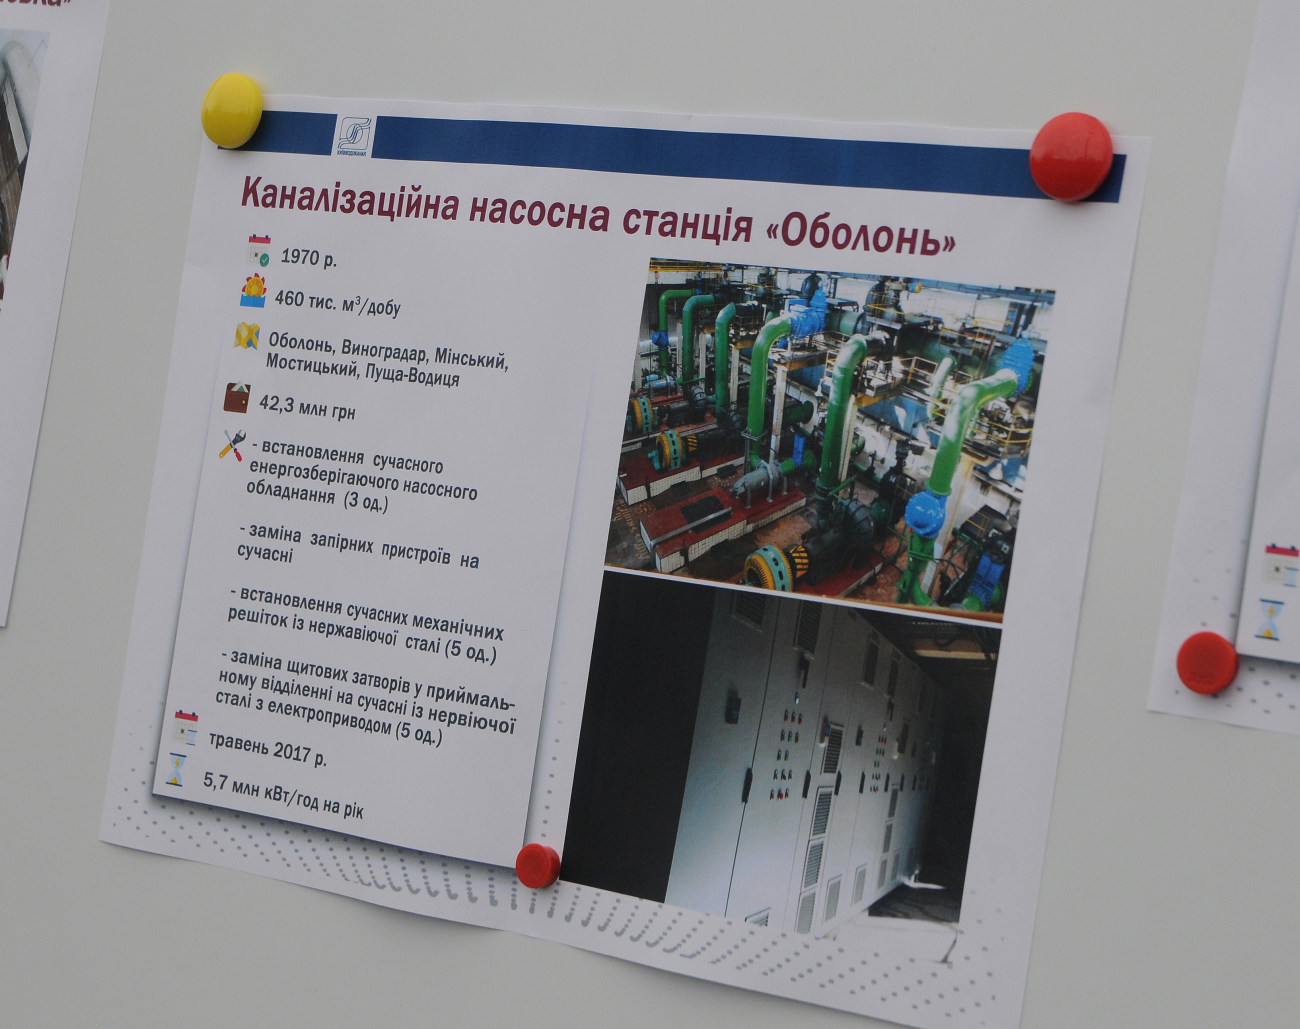 В Киеве презентовали самую большую канализационно-насосную станцию «Оболонь»